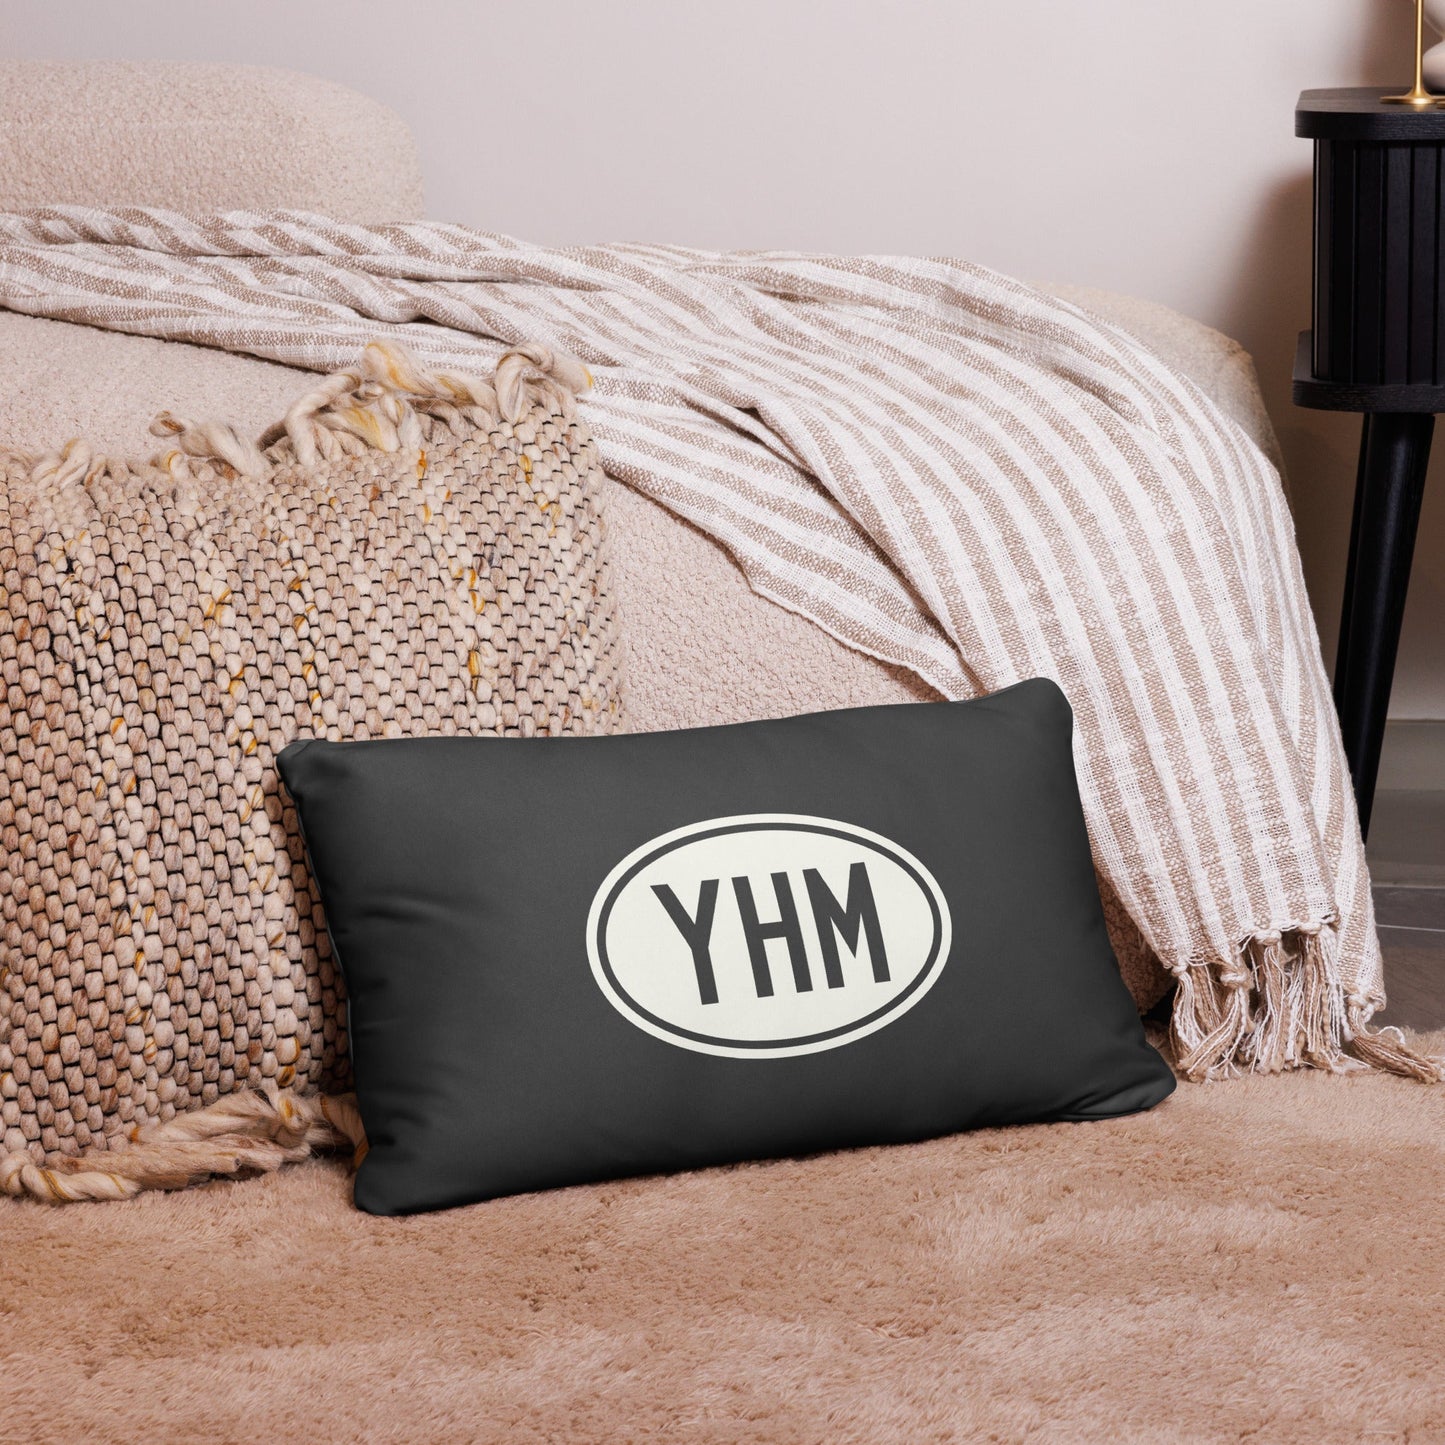 Unique Travel Gift Throw Pillow - White Oval • YOW Ottawa • YHM Designs - Image 05